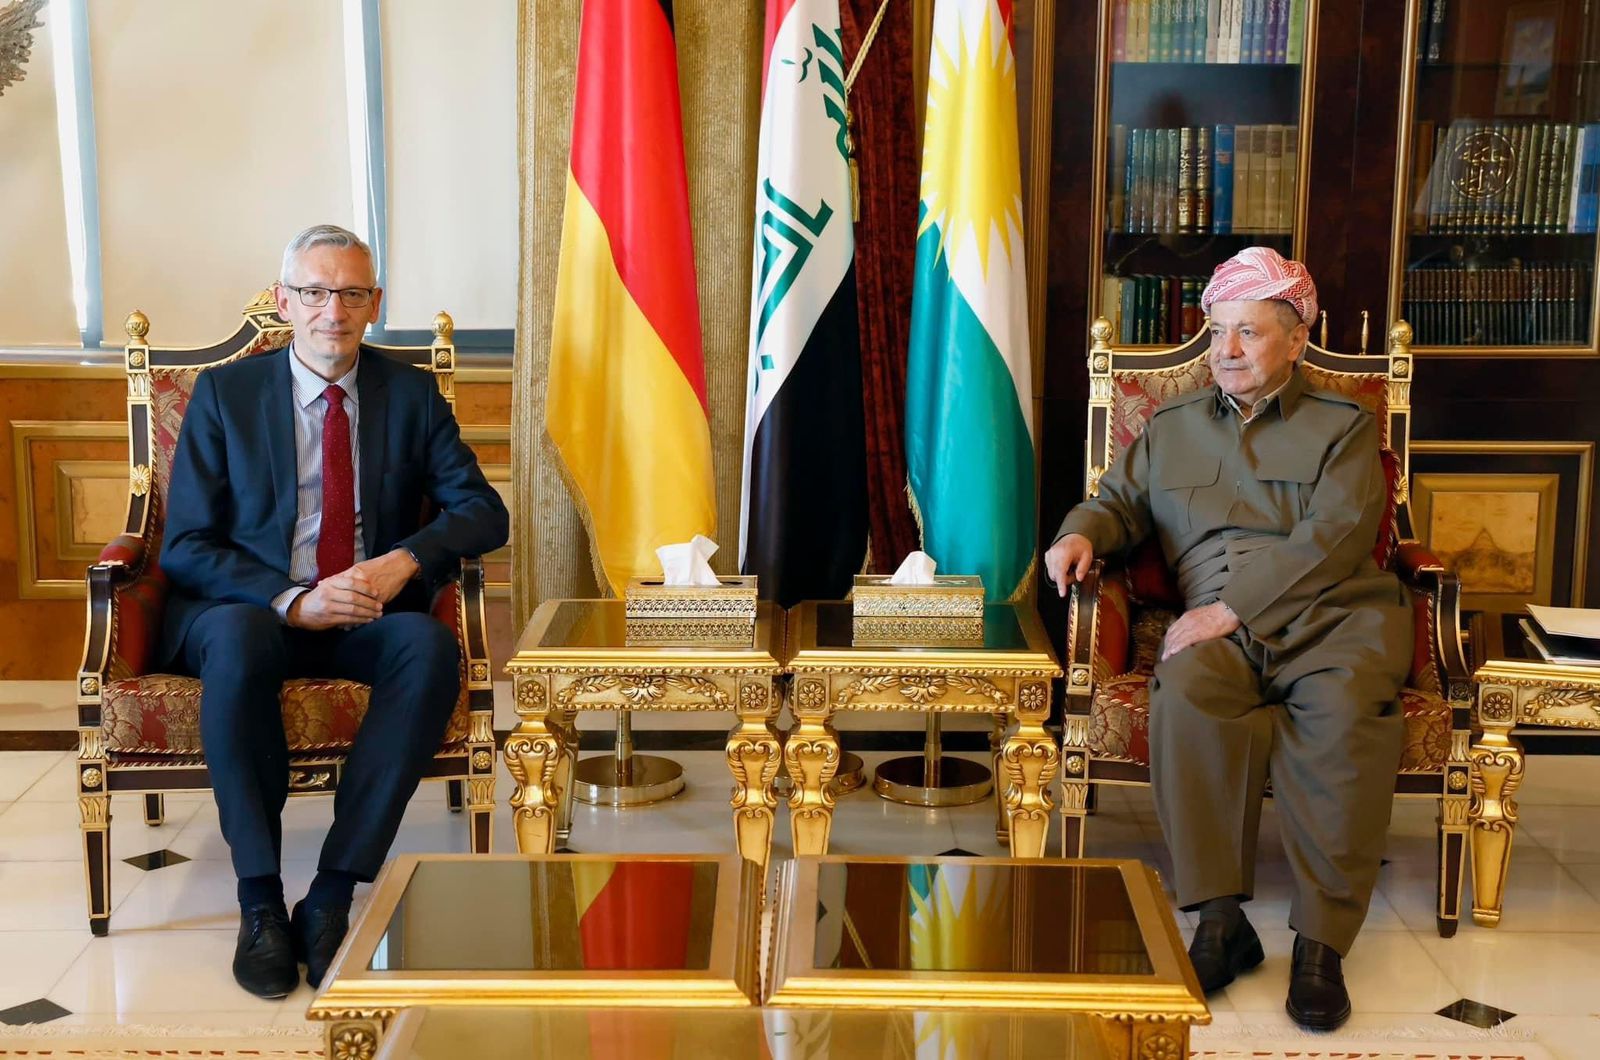 Erbil praises German support, seeks to strengthen ties